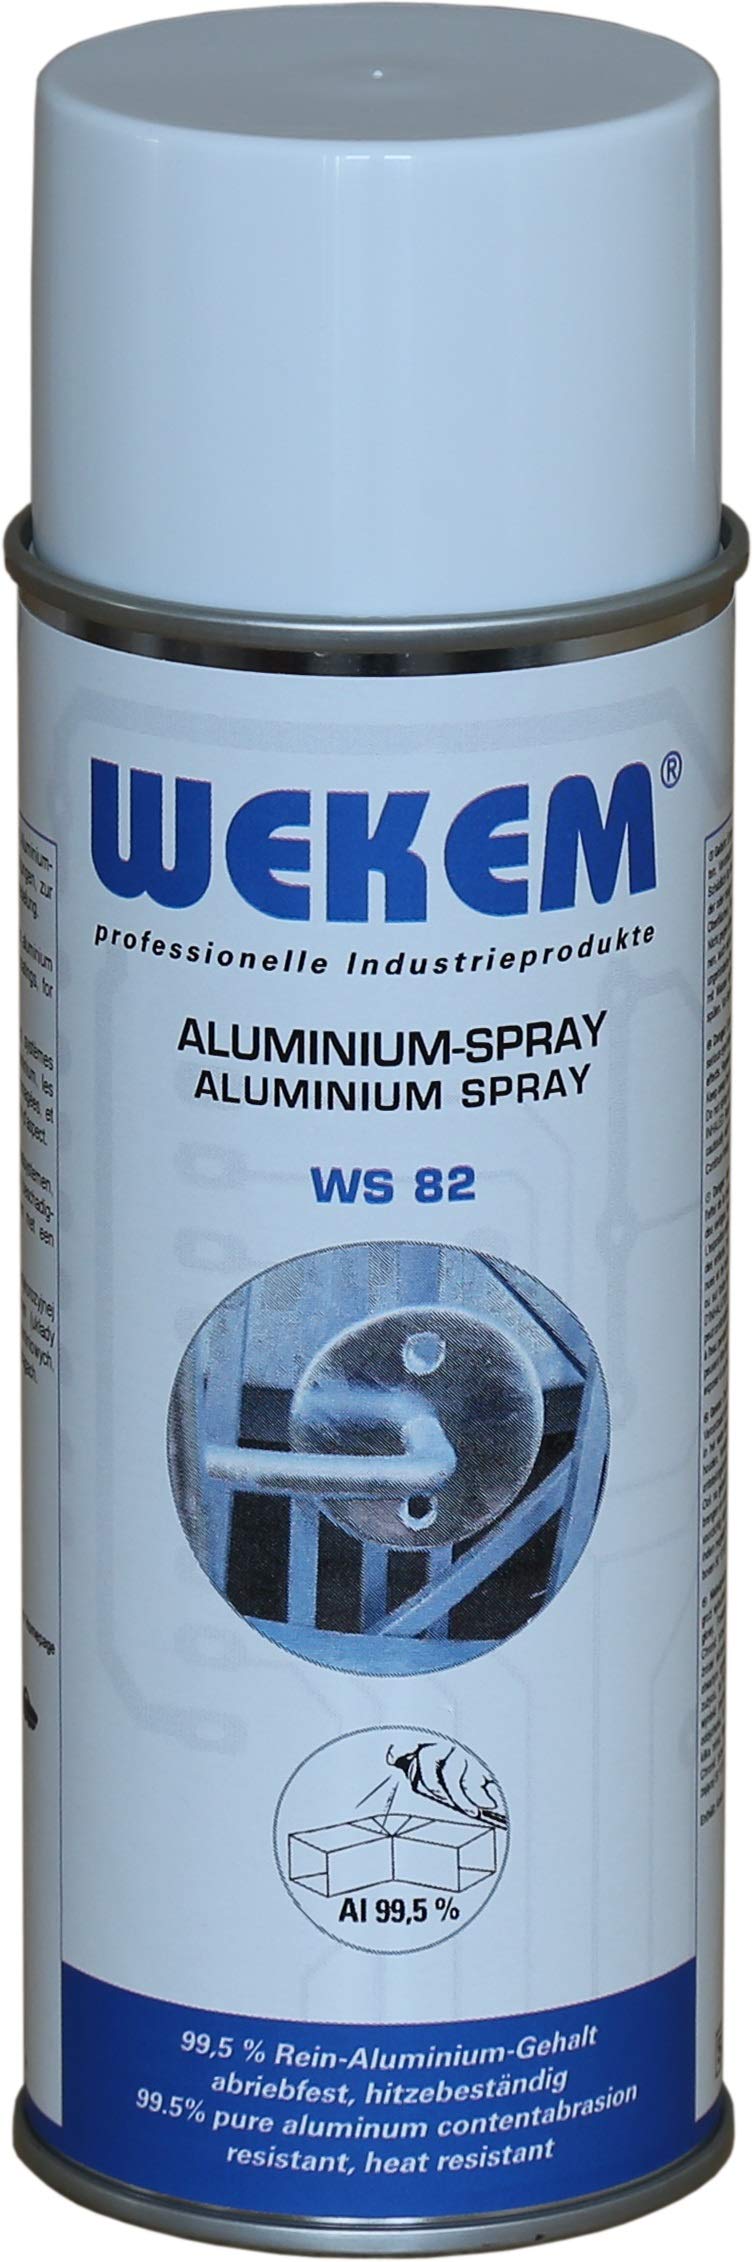 1x 400ml Wekem Aluminium-Spray WS82 von Wekem